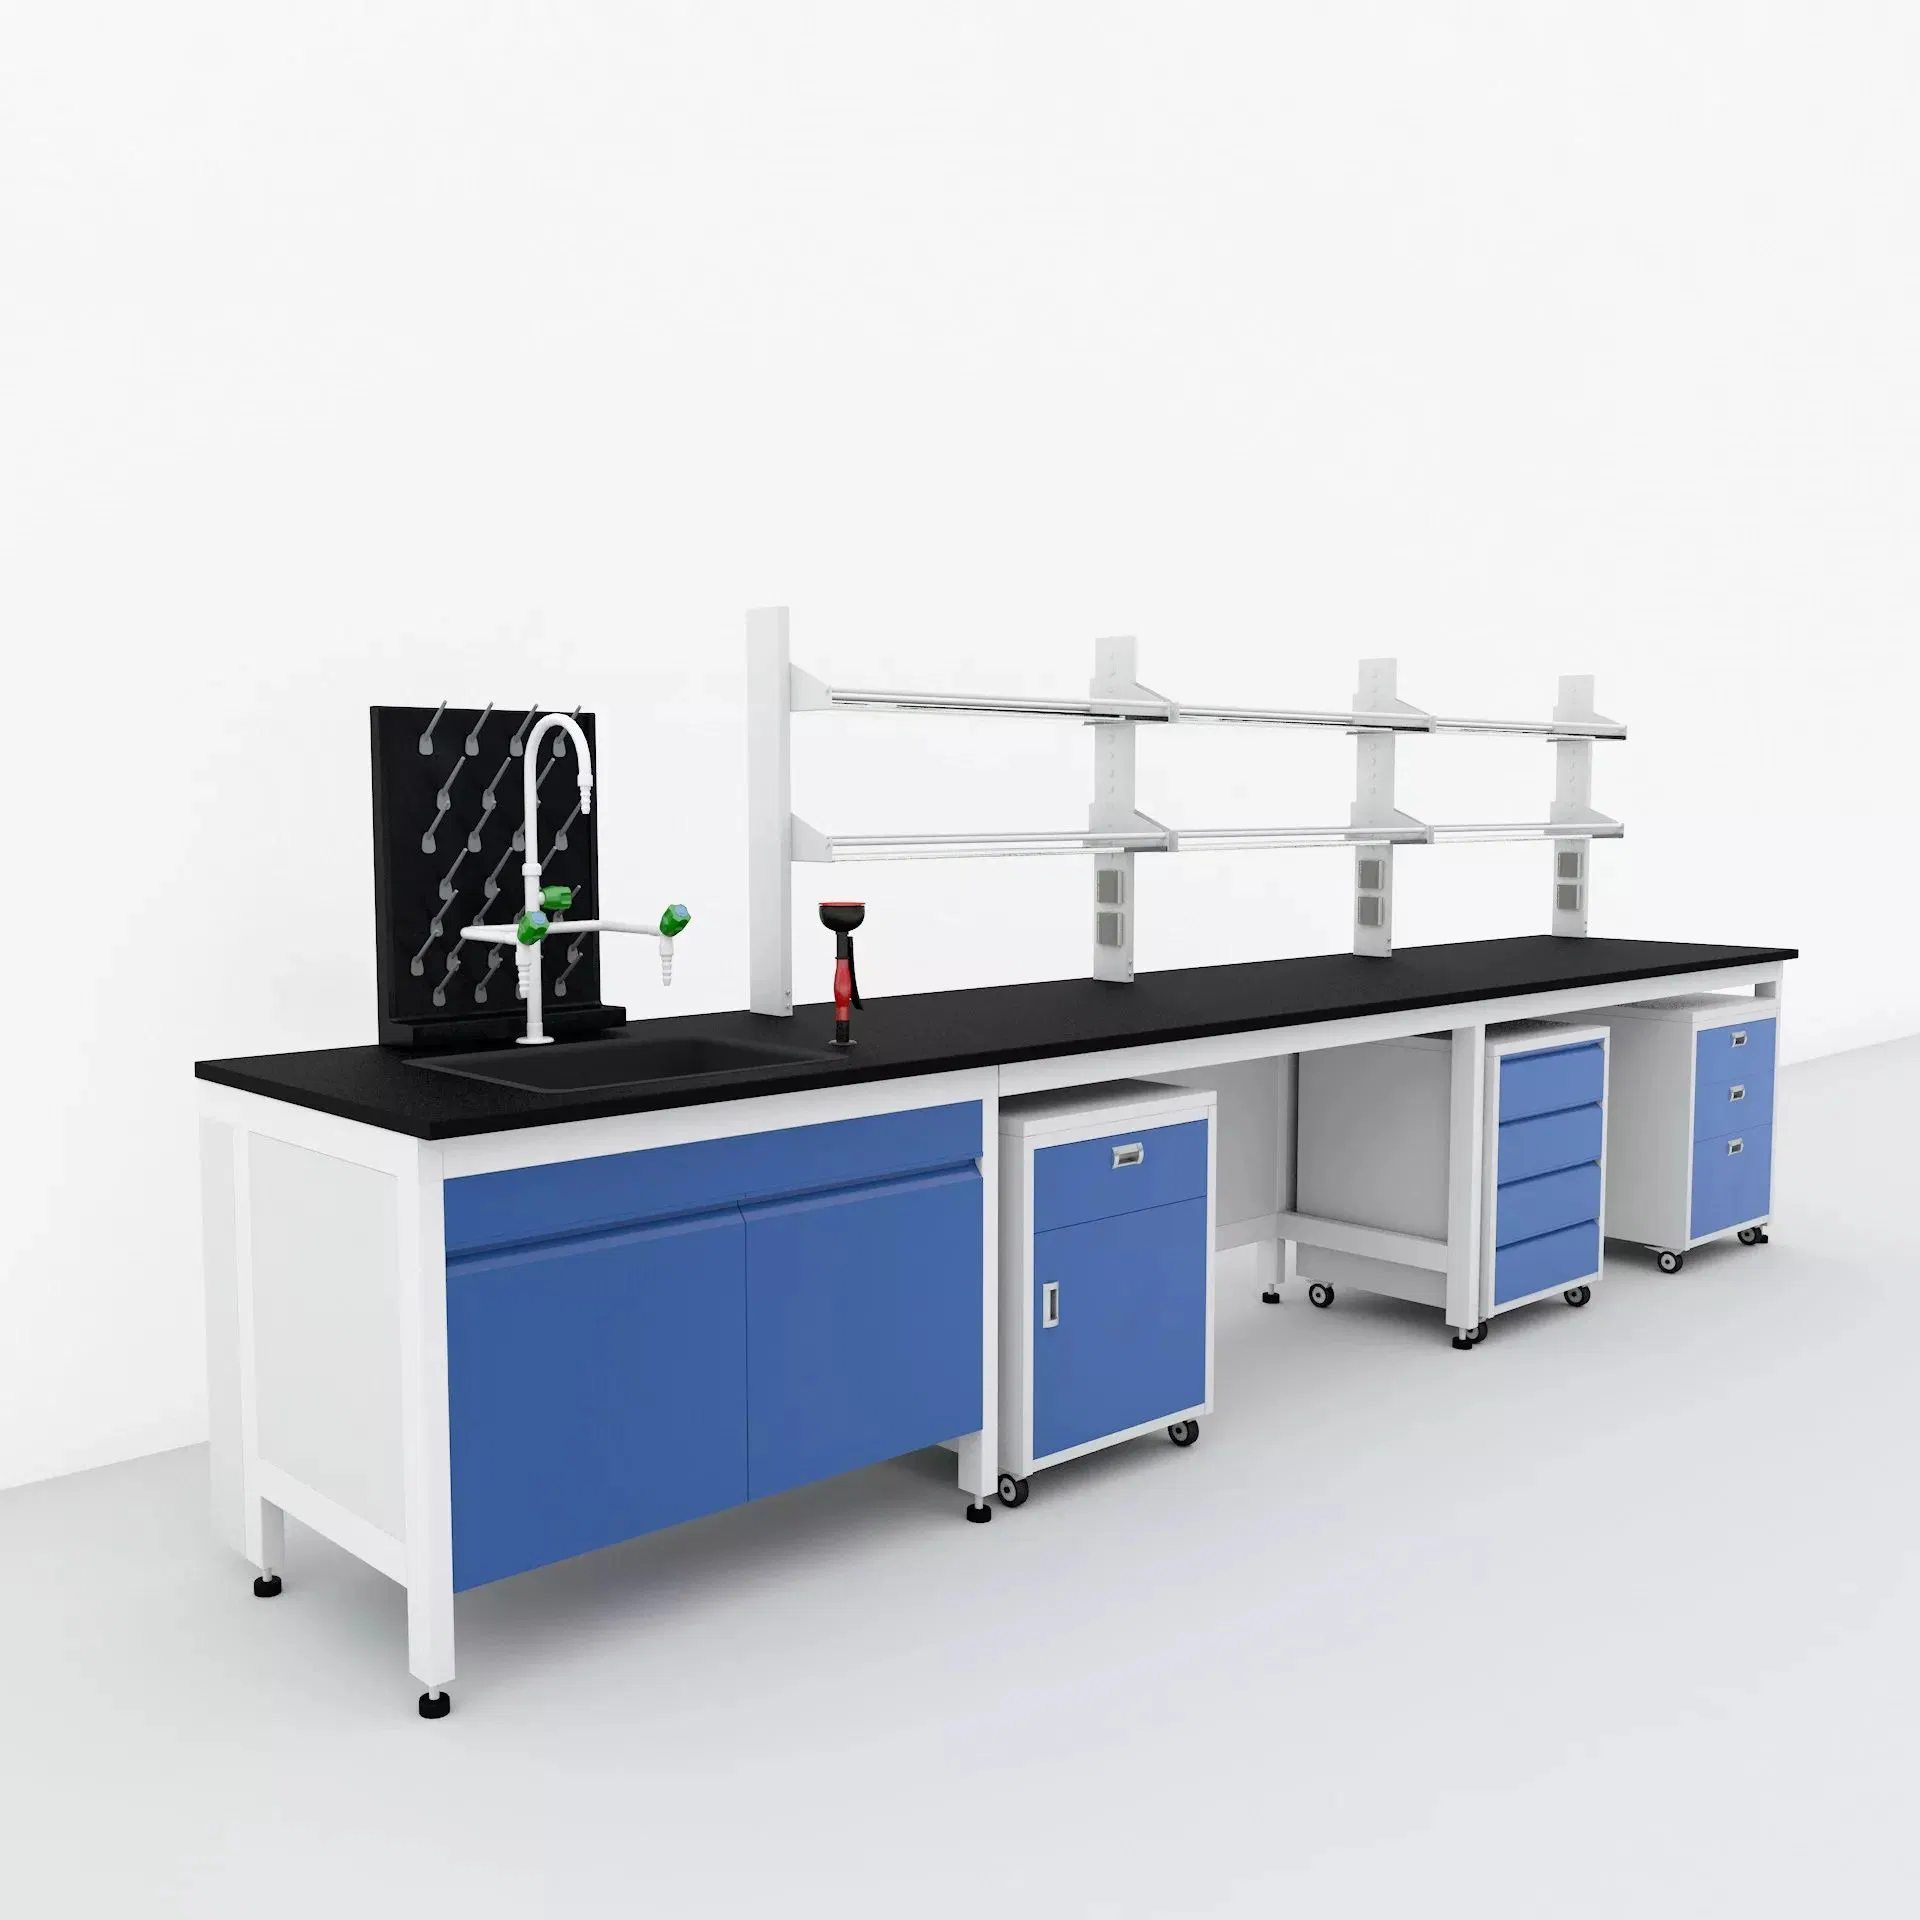 Mobiliario de laboratorio de la escuela de la isla de Laboratorio de Física Laboratorio de Química Tabla bancos banco de trabajo con fregadero